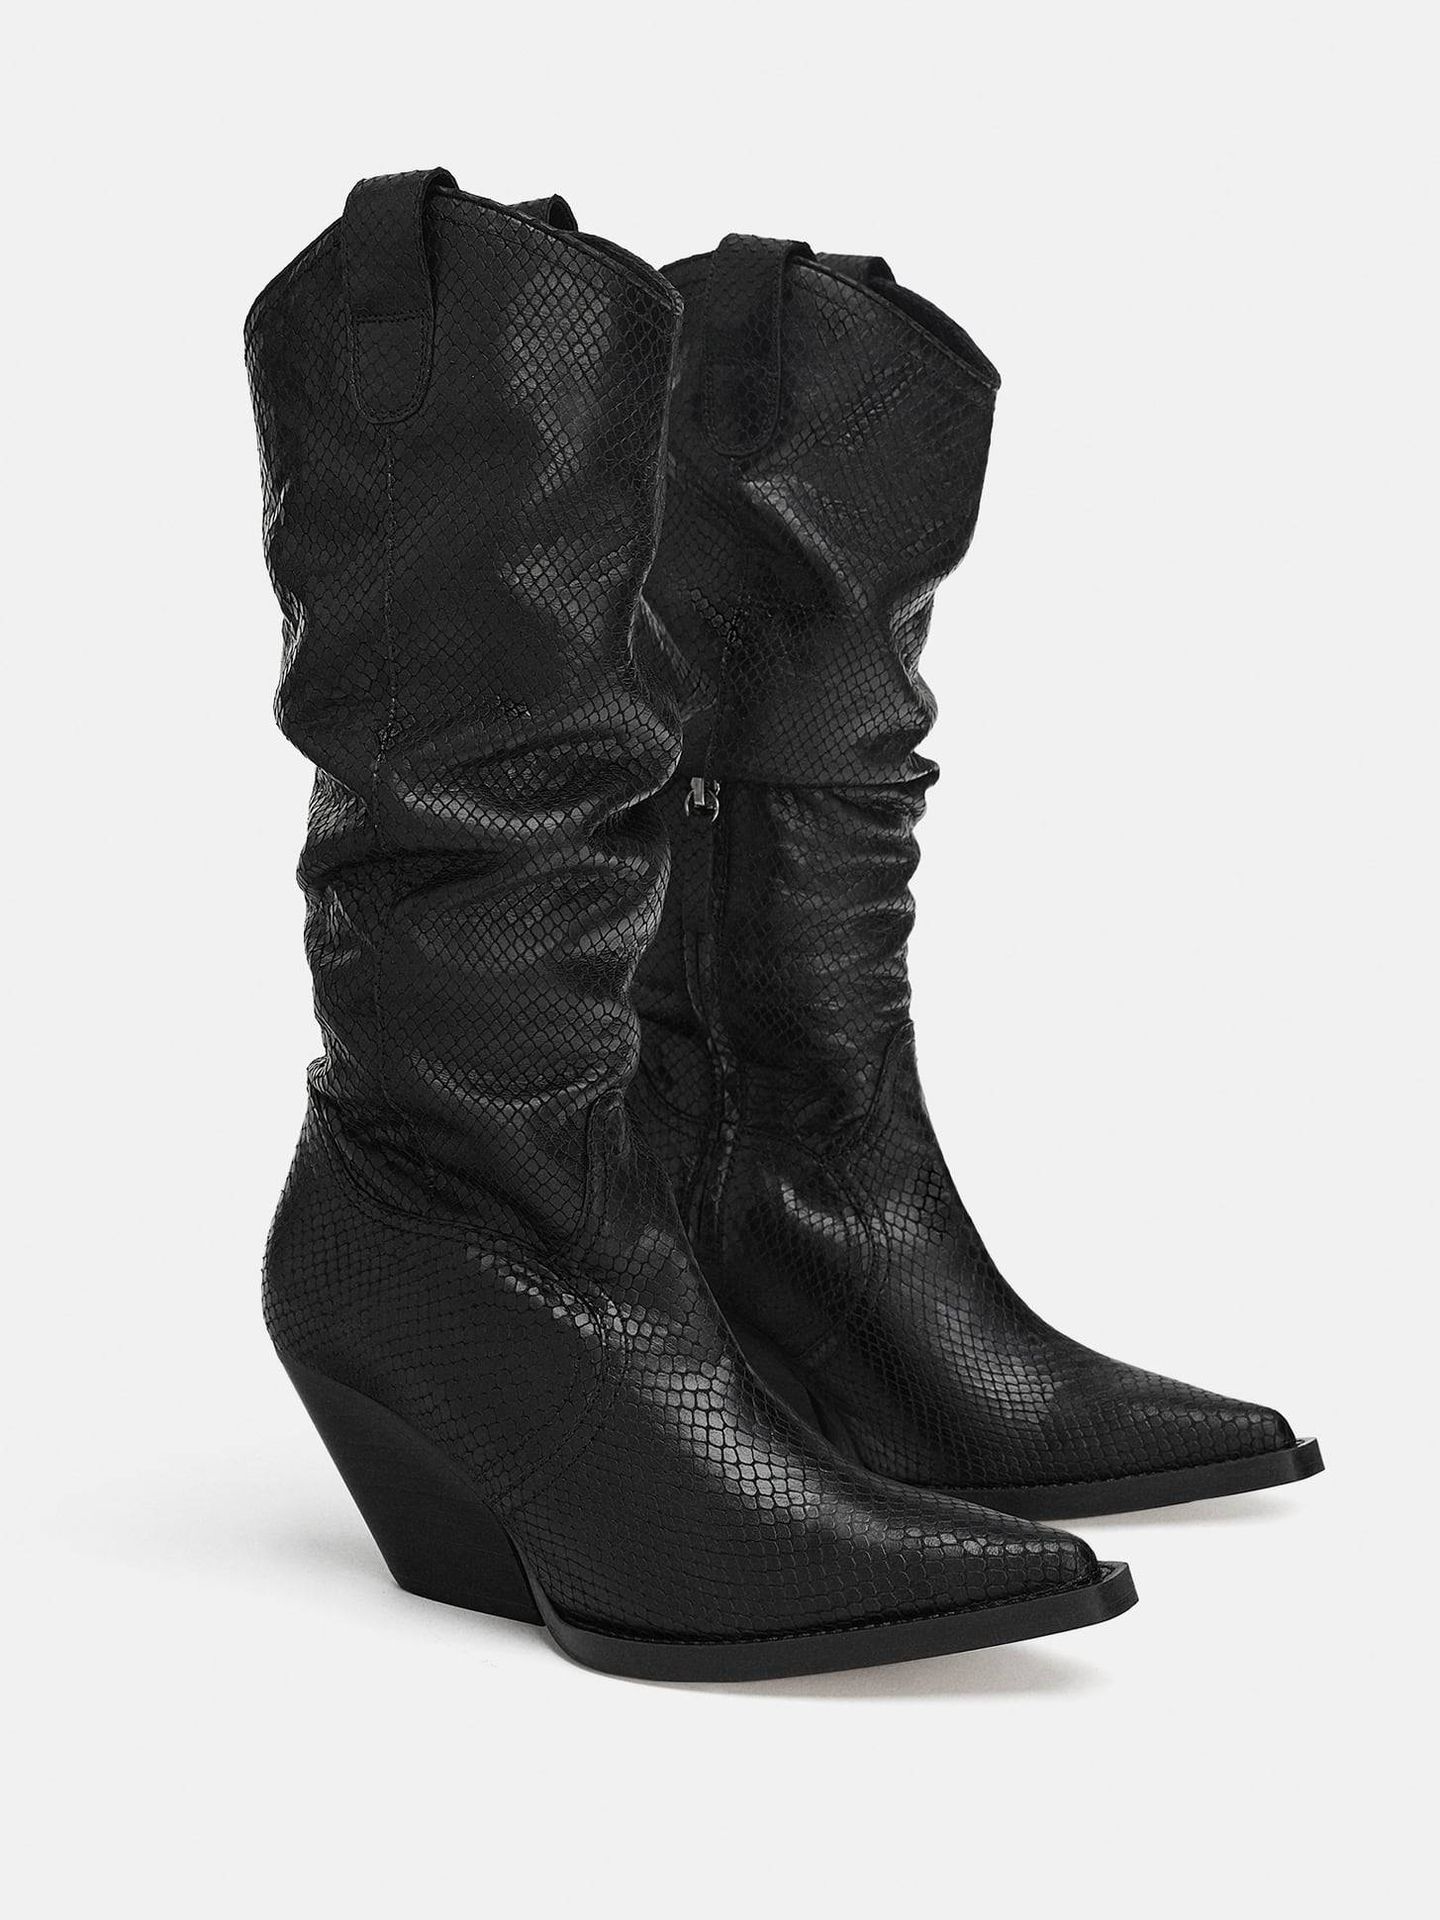 Las que saben de moda tienen un nuevo fetiche: las botas de inspiración cowboy. (Cortesía Zara)